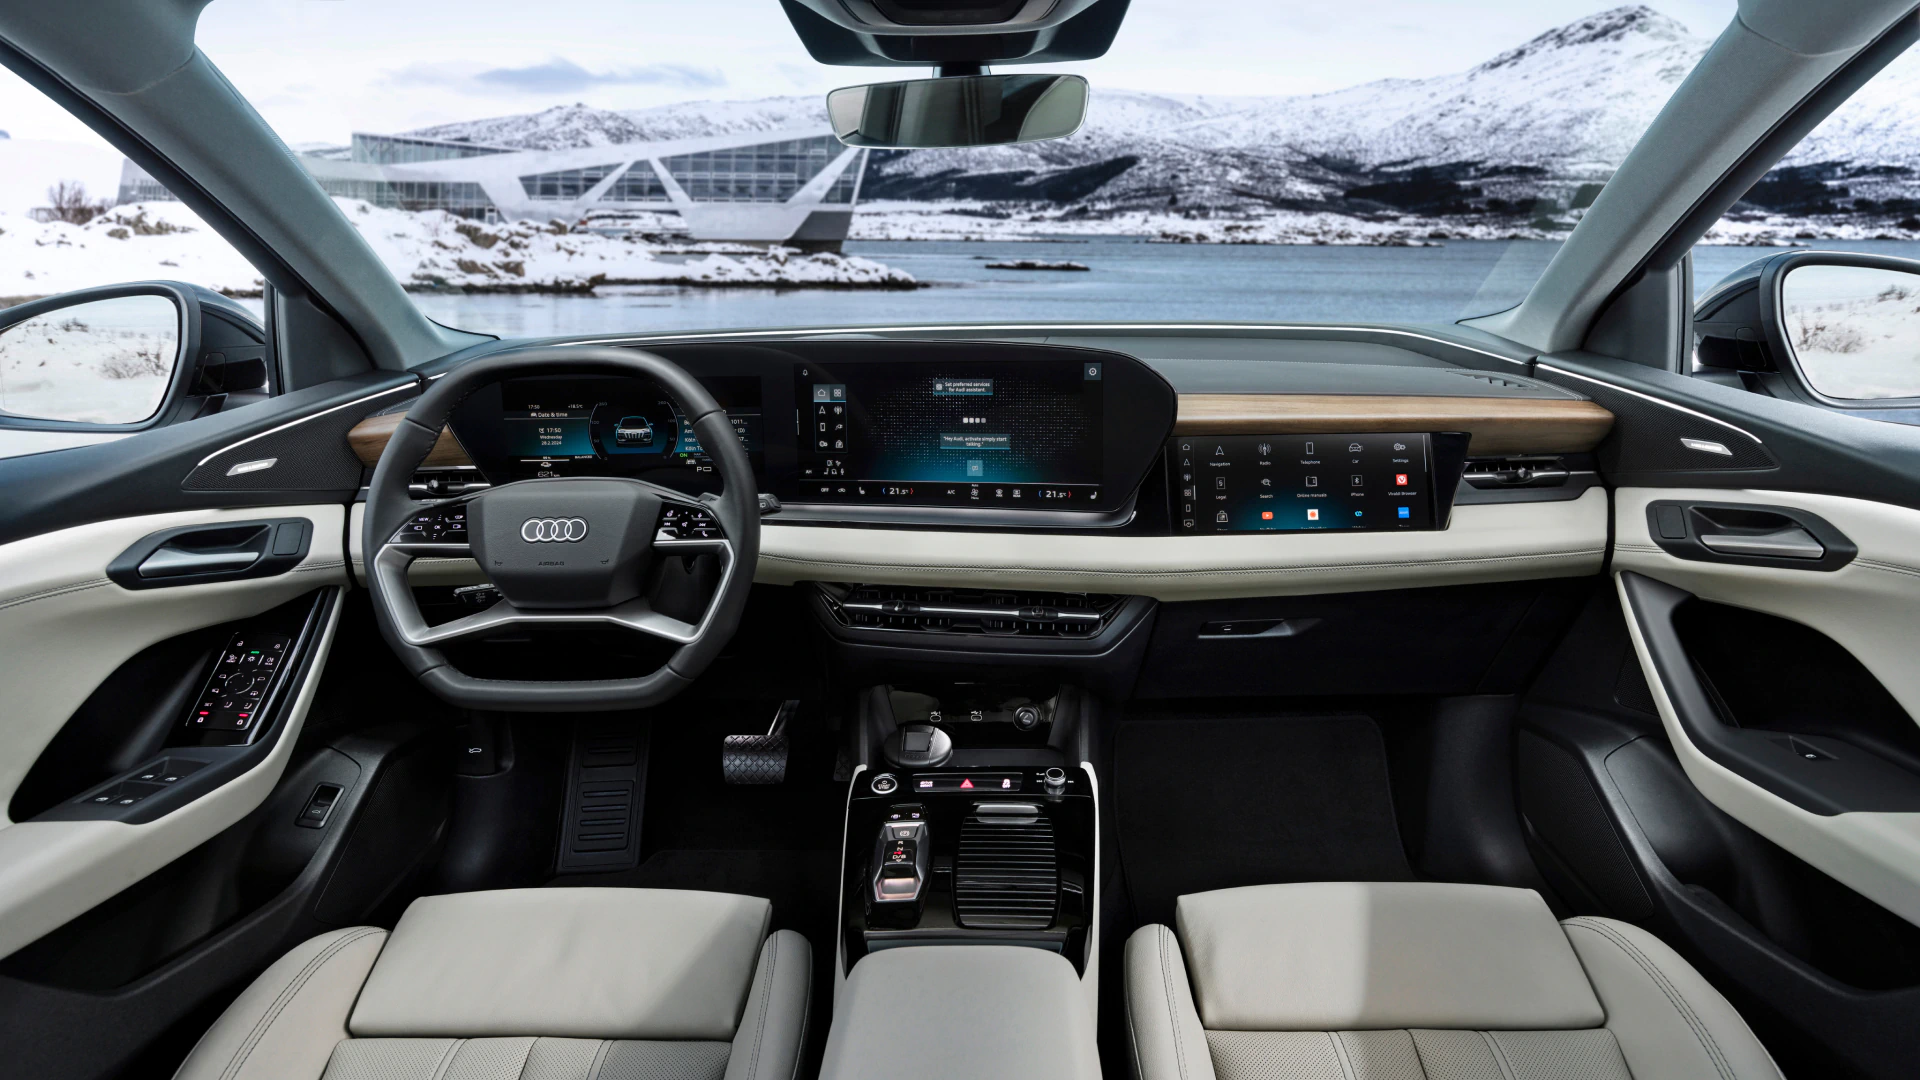 Interior and dashboard of the Audi Q6 e-tron.